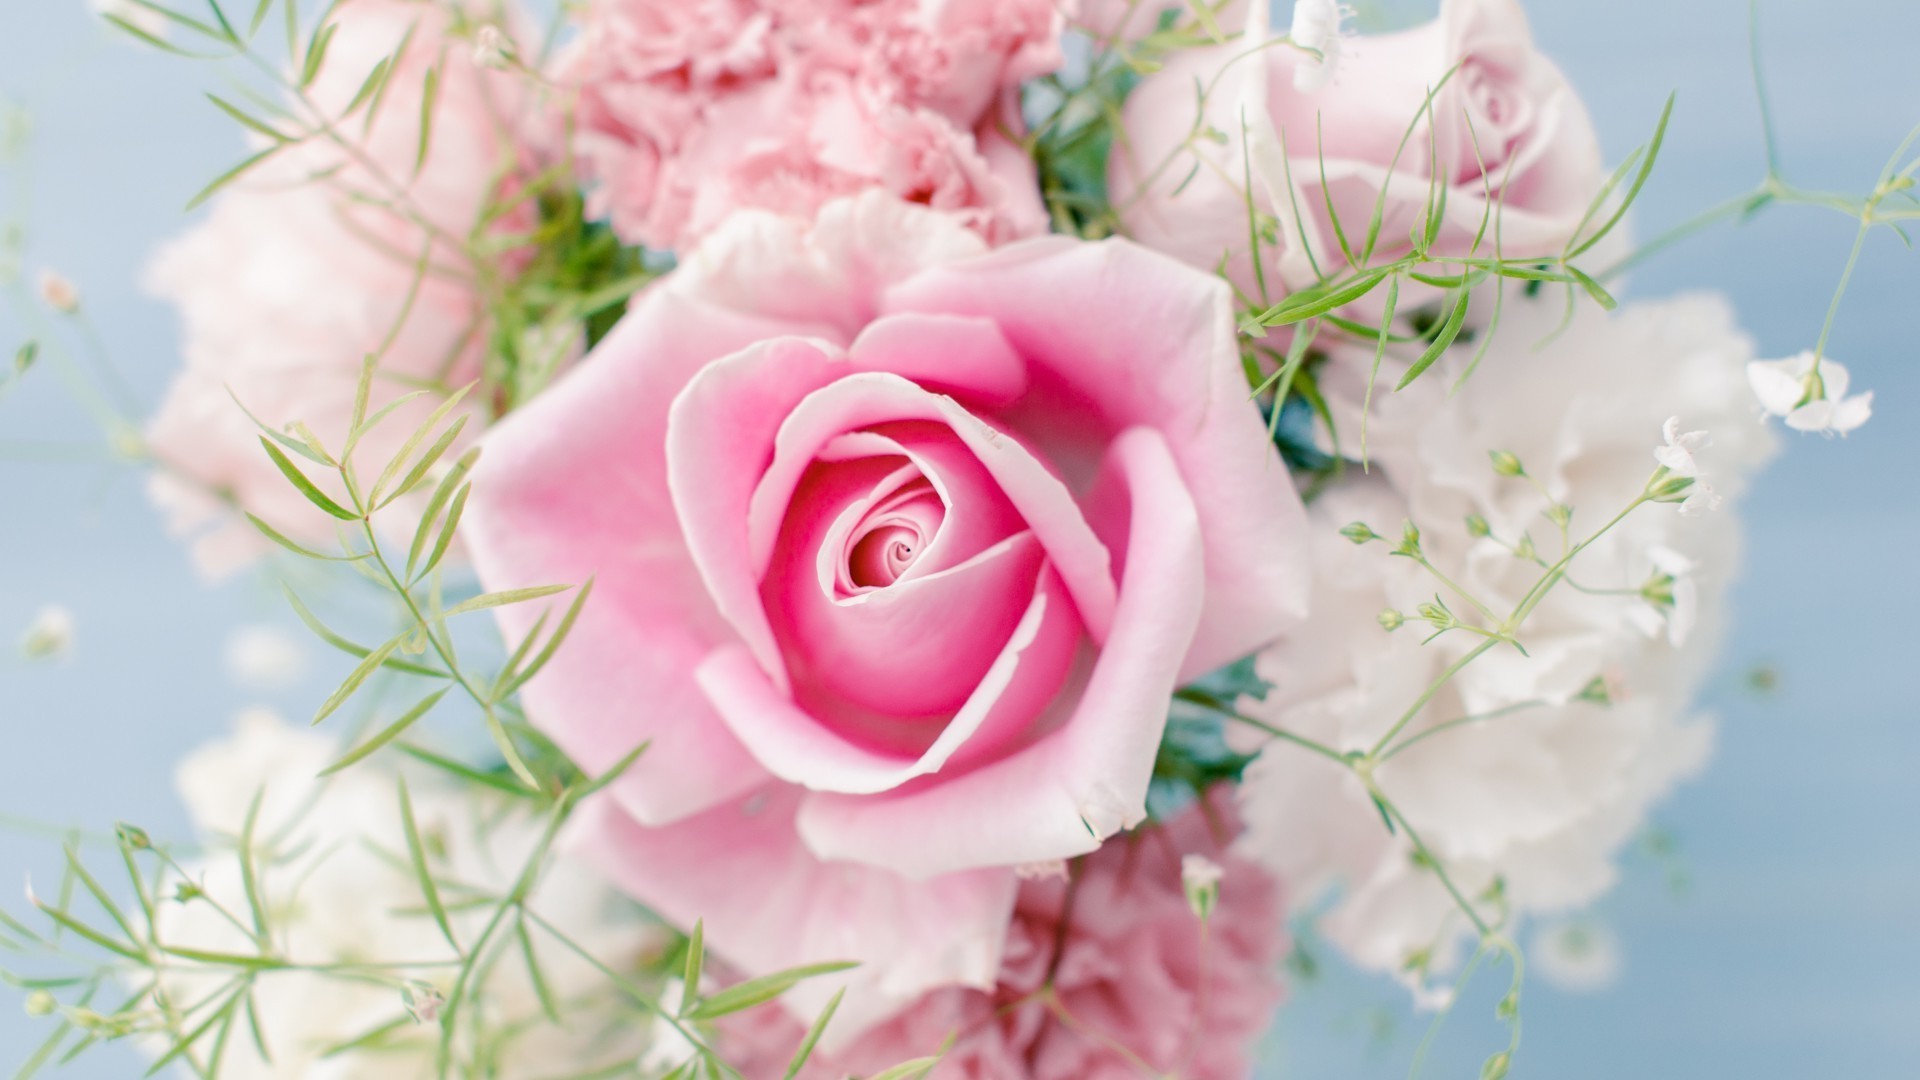 розы цветок свадьба букет цветочные природа любовь кластер блюминг флора лепесток лист романтика романтический пастель красивые подарок цвет нежный